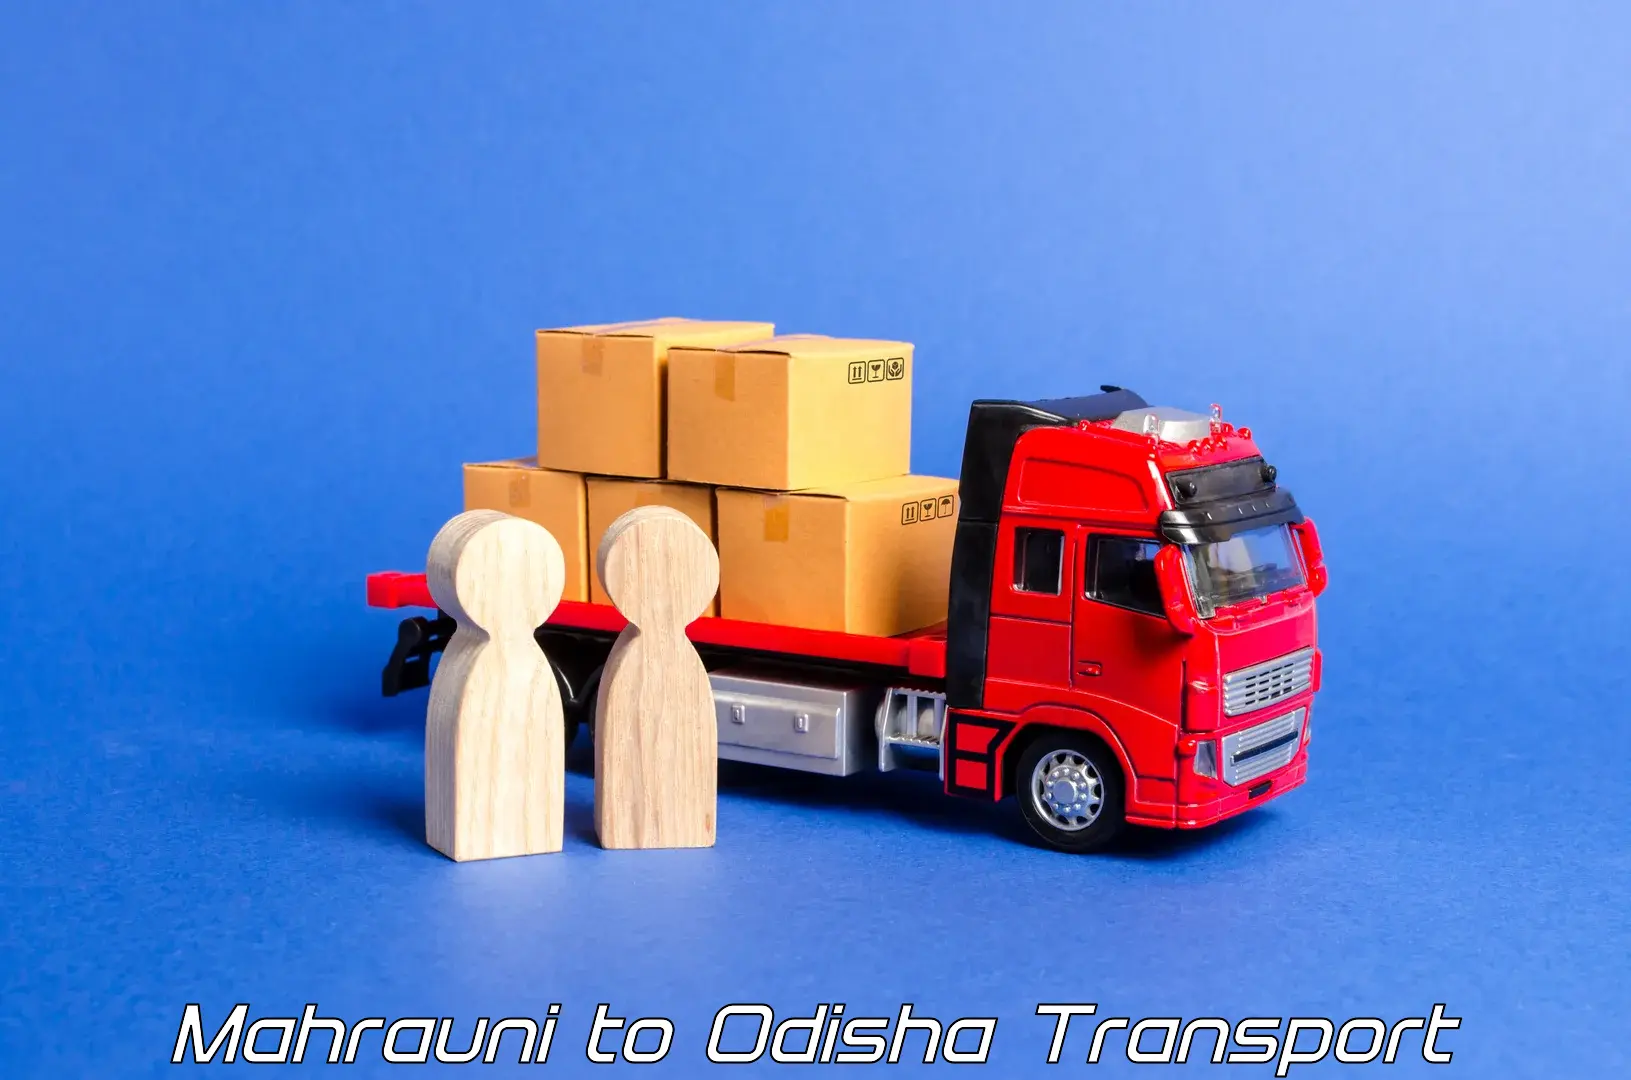 Shipping partner in Mahrauni to Sohela